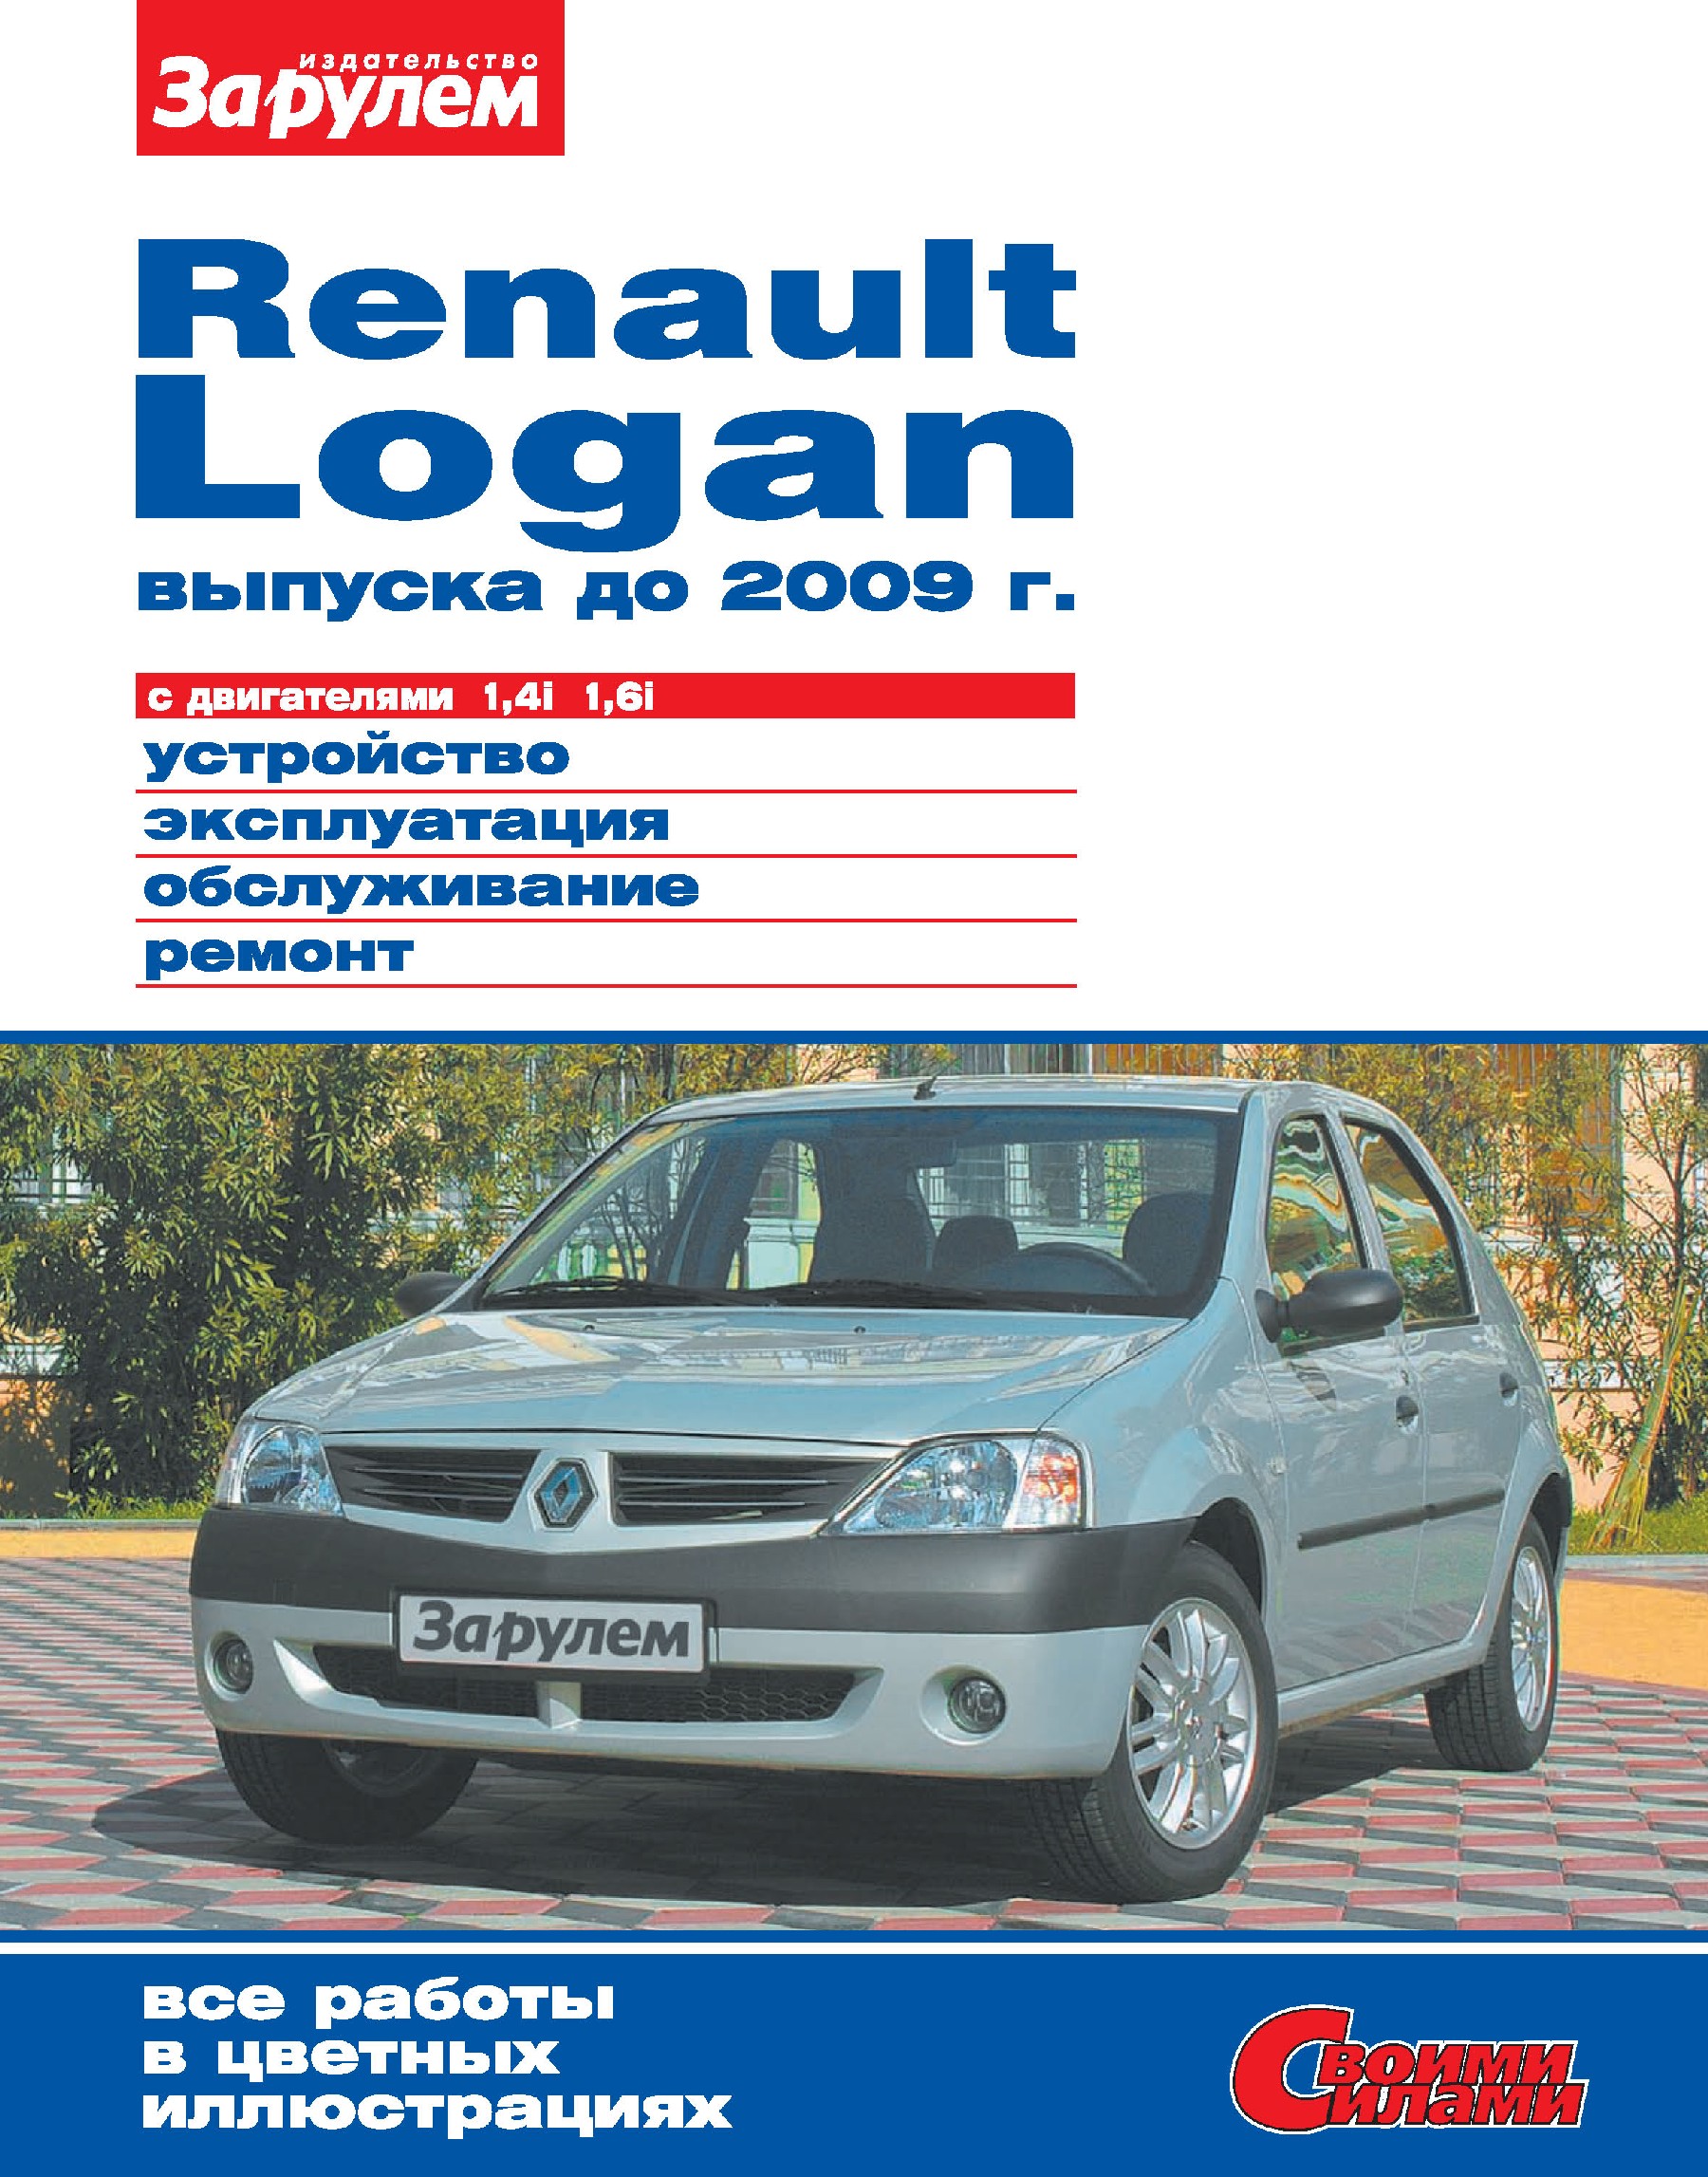 Зато не пешком: обслуживание и ремонт Renault Logan